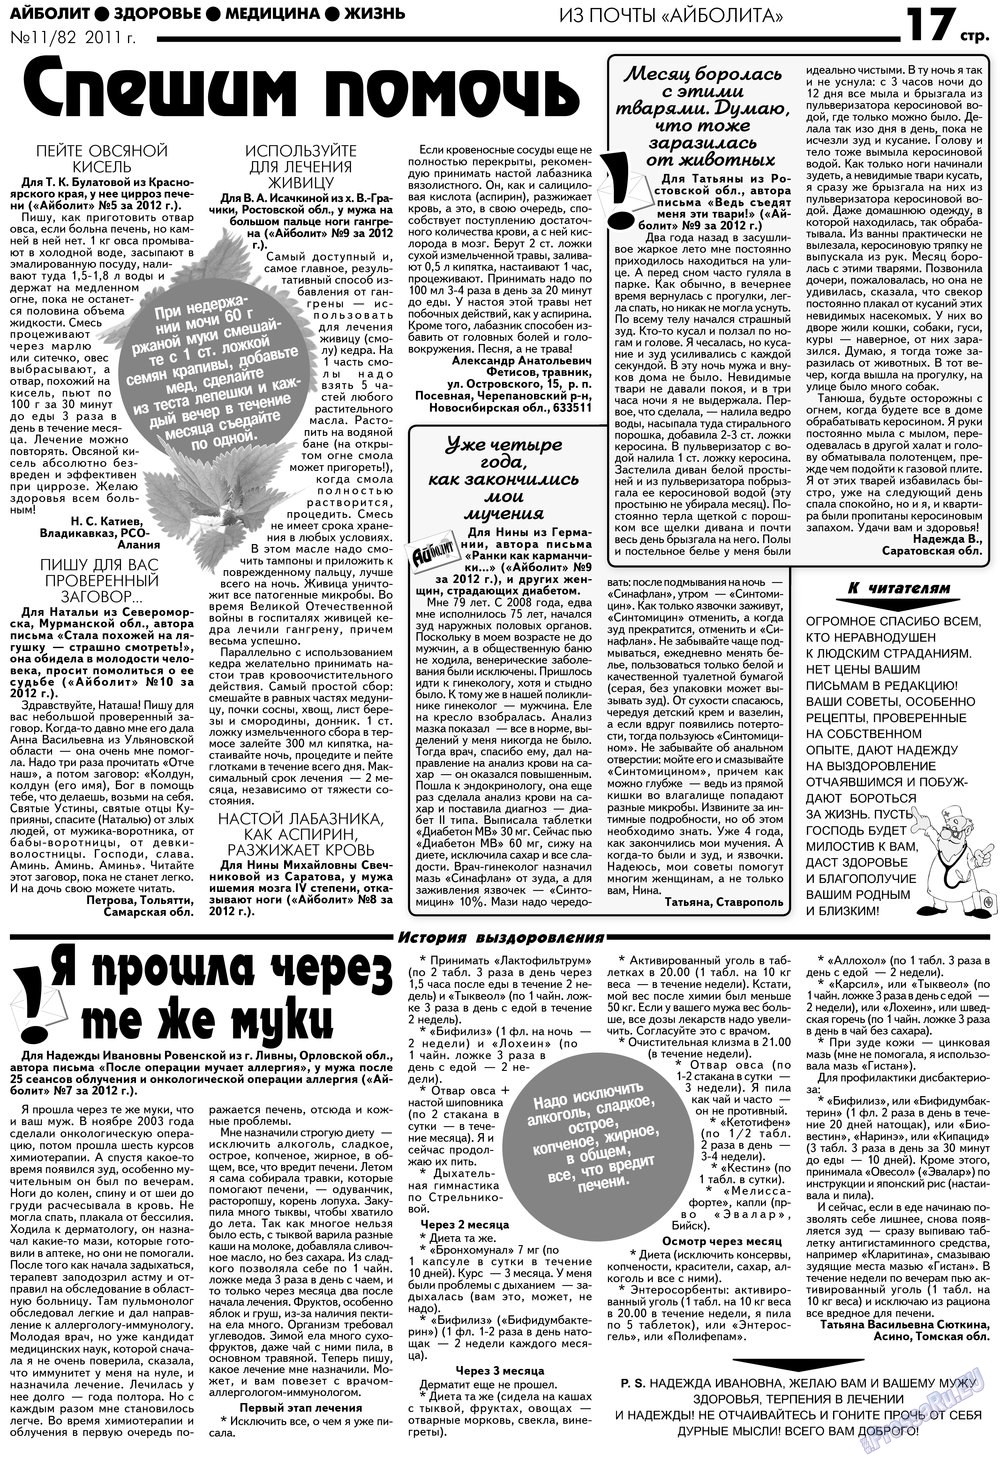 АйБолит, газета. 2012 №11 стр.17